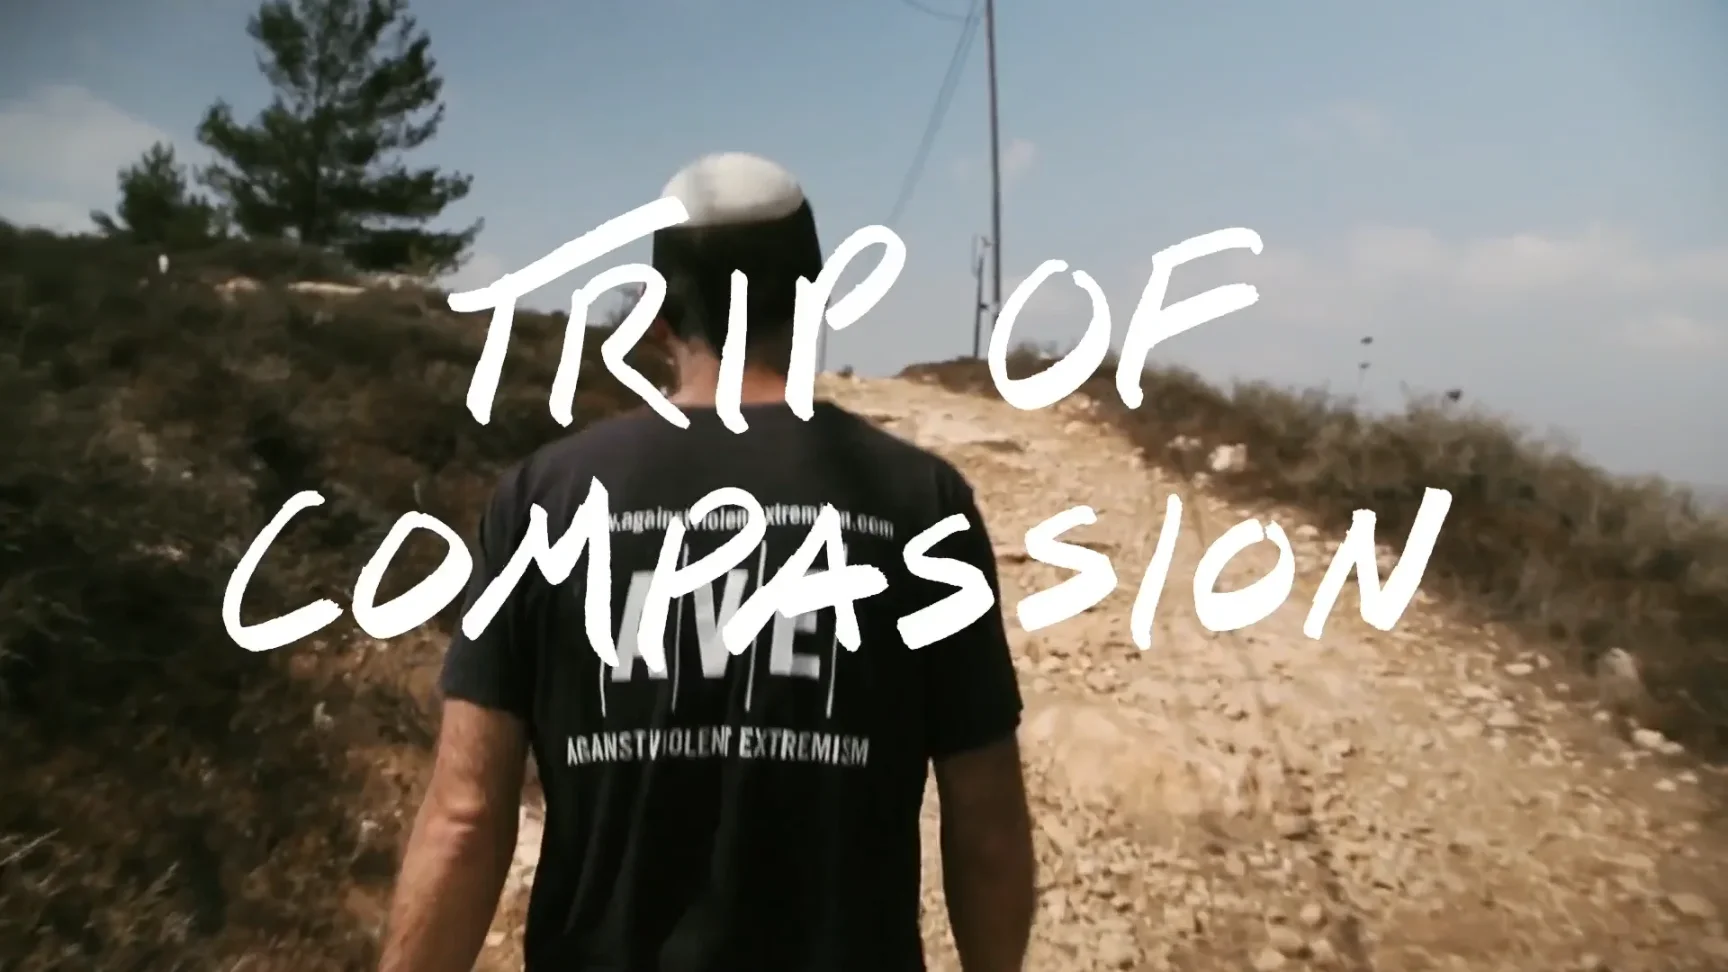 Viaggio della compassione Tim ferriss documentario psichedelico